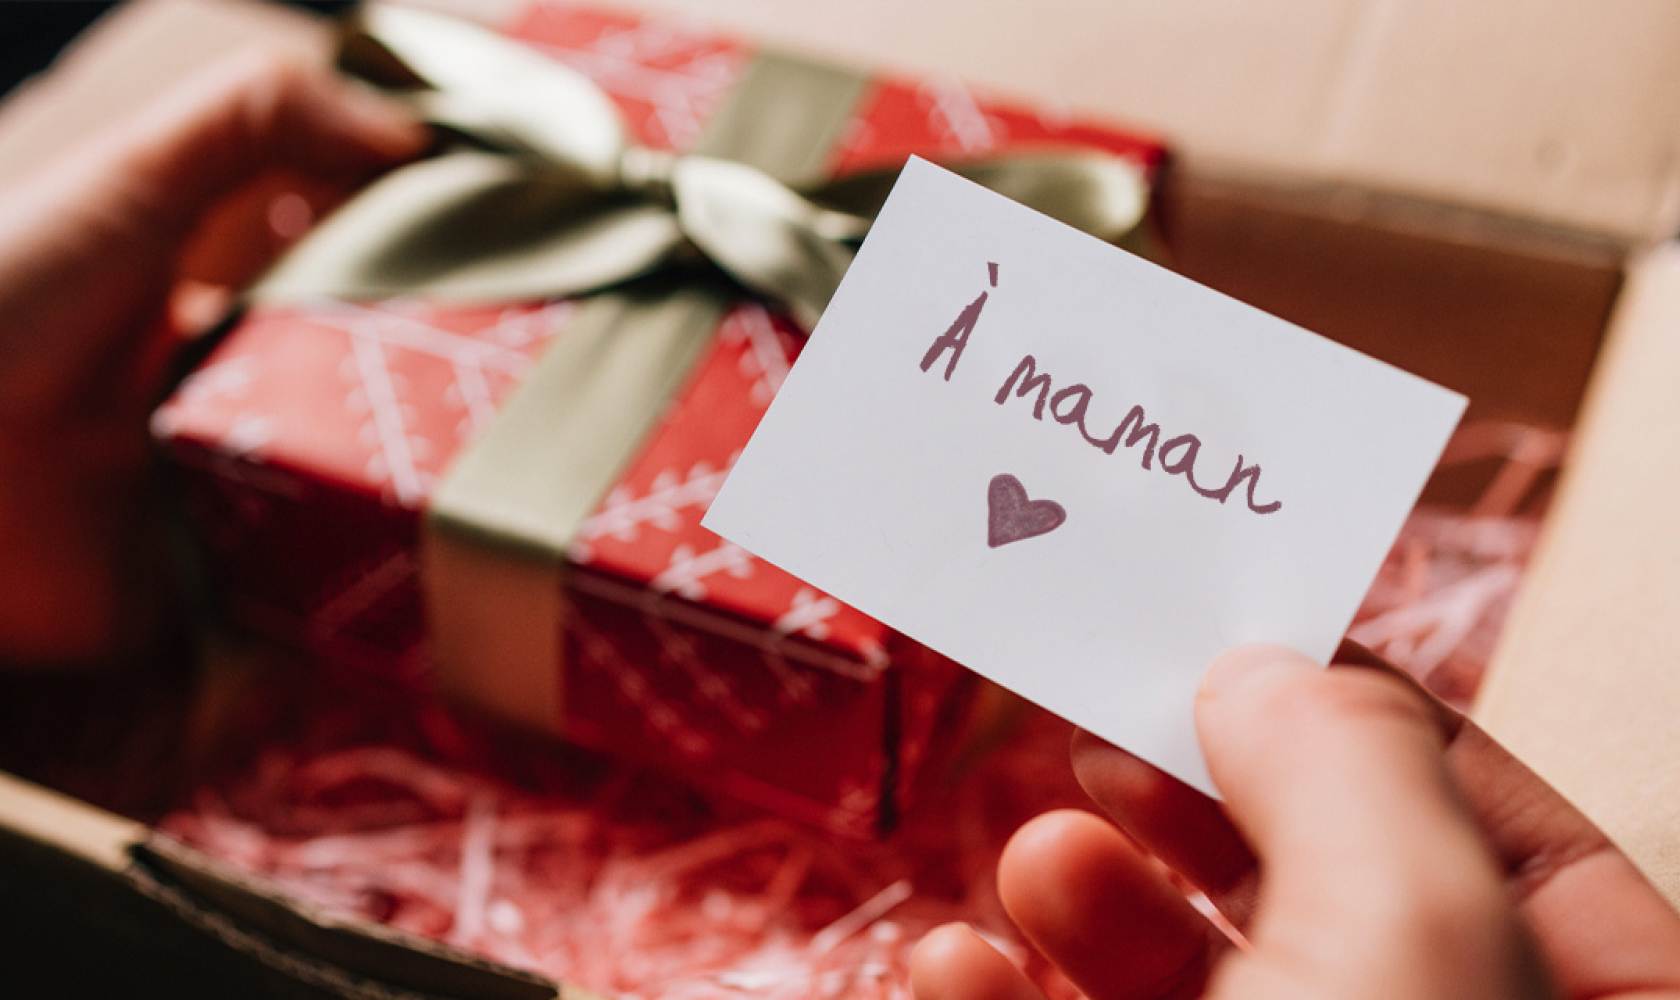 Des mains ouvrent un colis qui contient une boîte-cadeau emballée et une carte sur laquelle il est écrit « À maman »